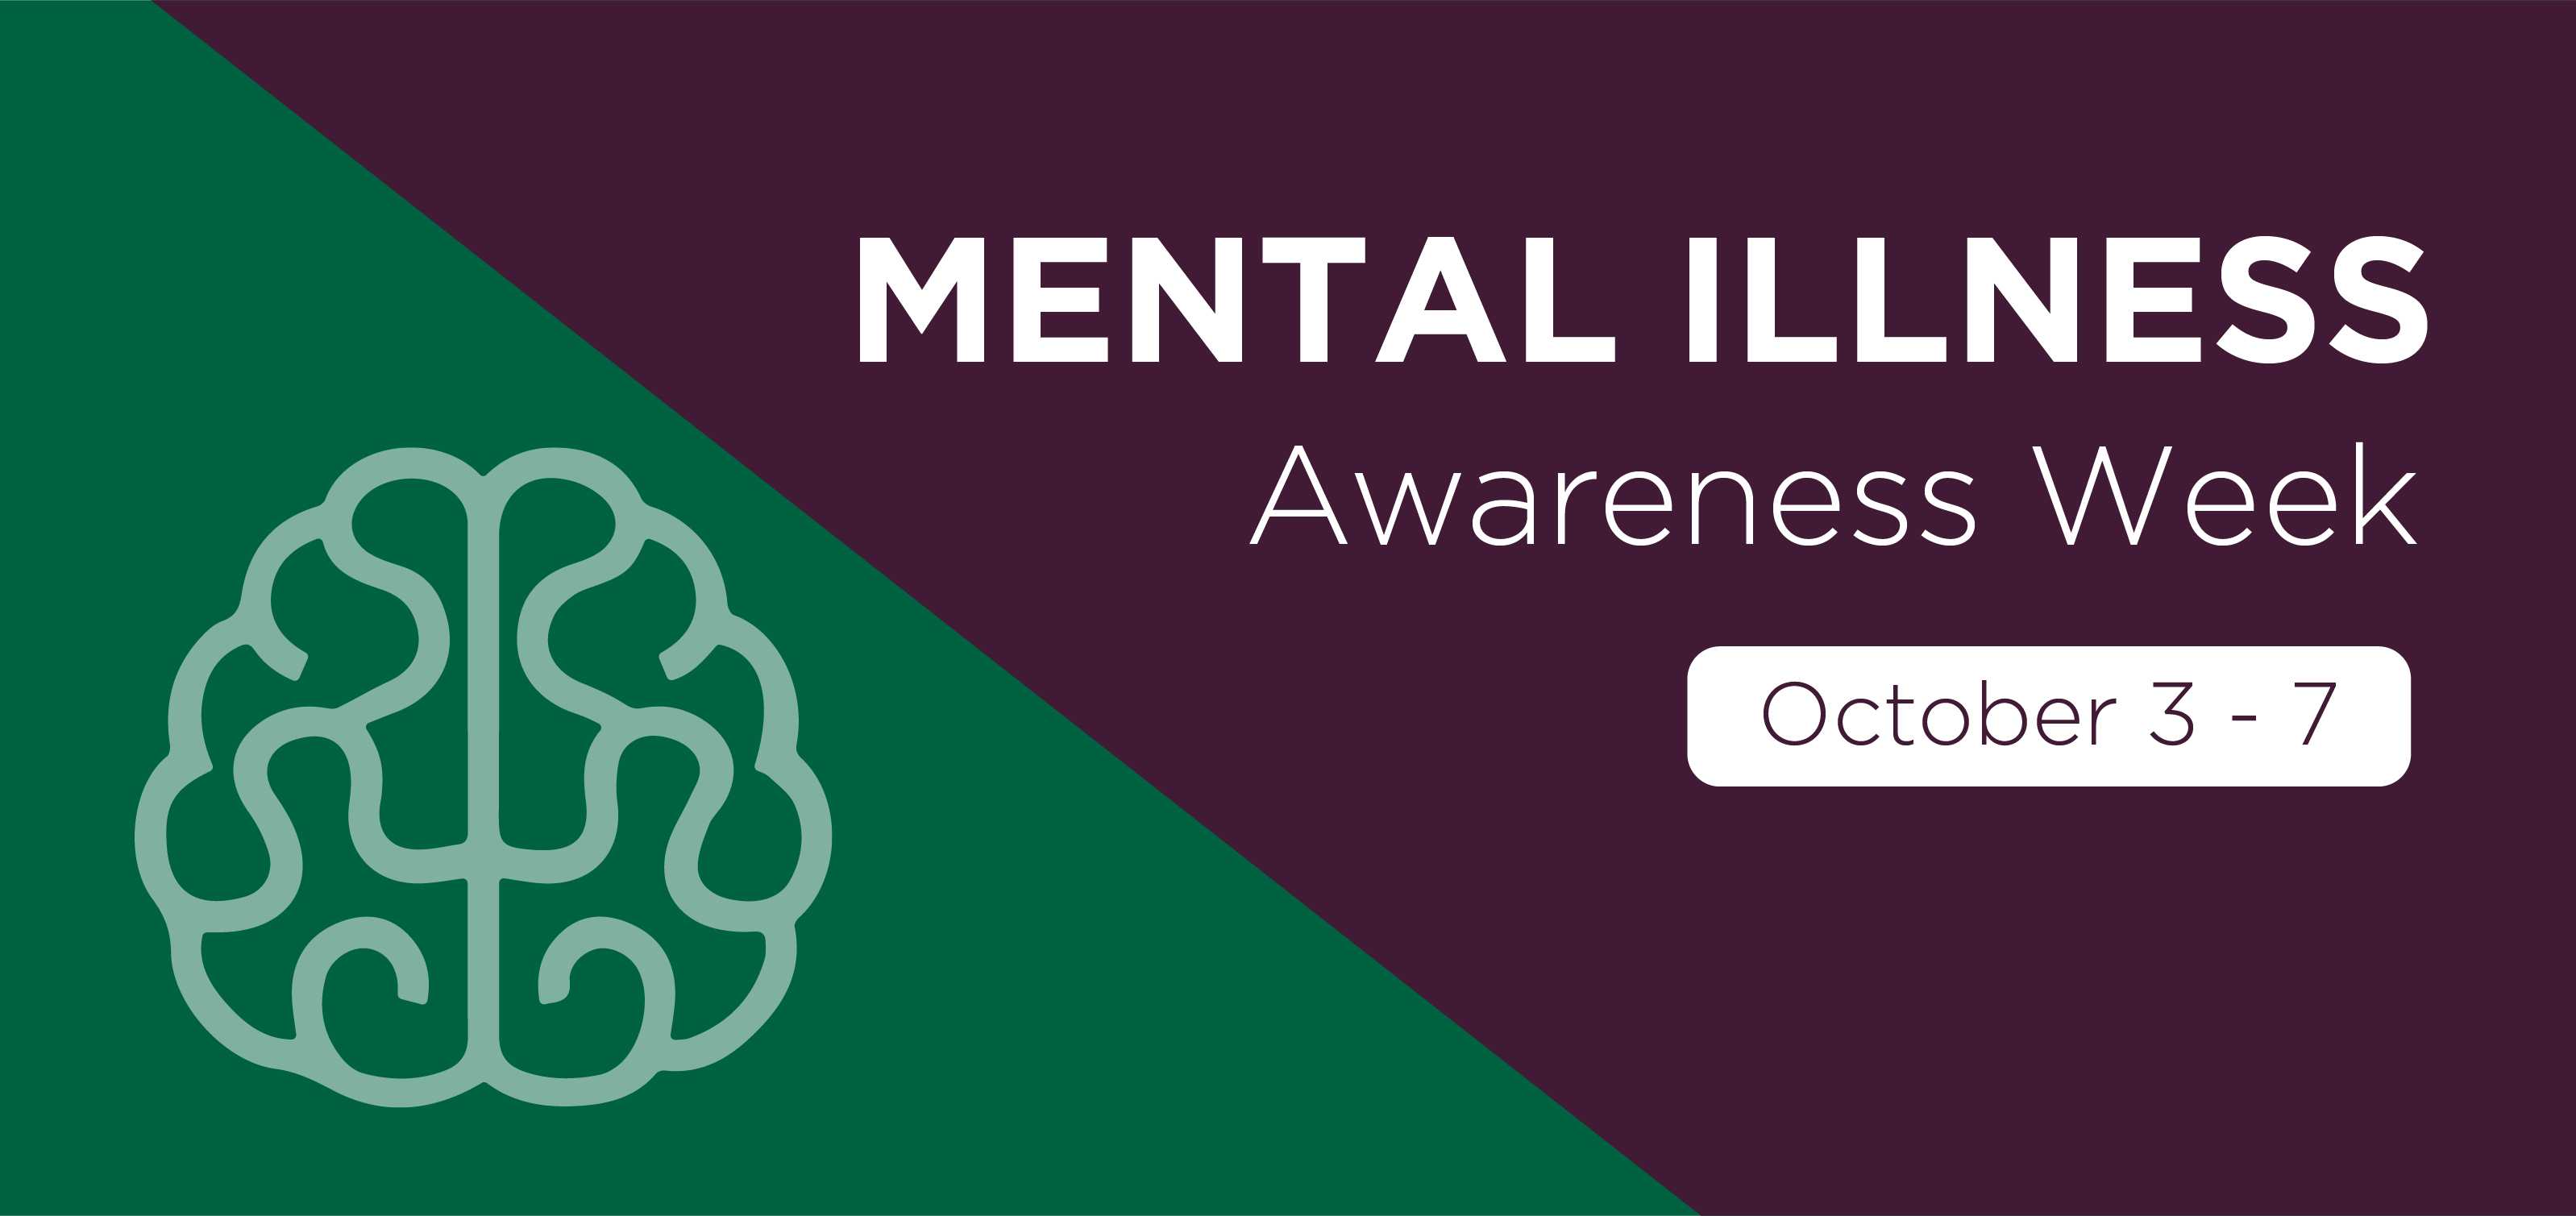 Take part in Mental Illness Awareness Week (Oct. 3-6)